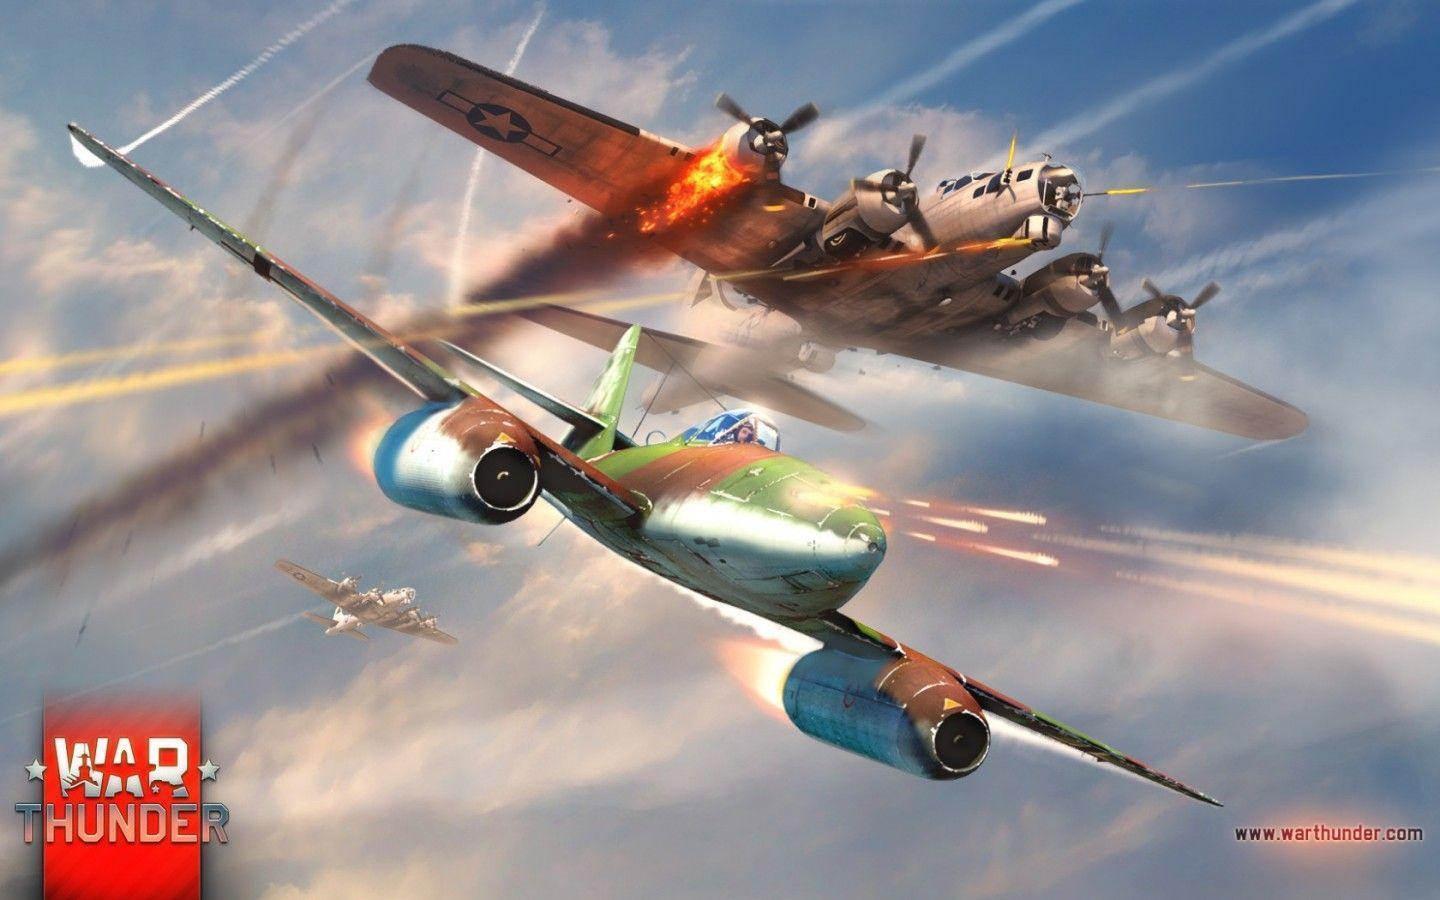 War Thunder, Aircrafts, Battle widescreen wallpaper. Wide